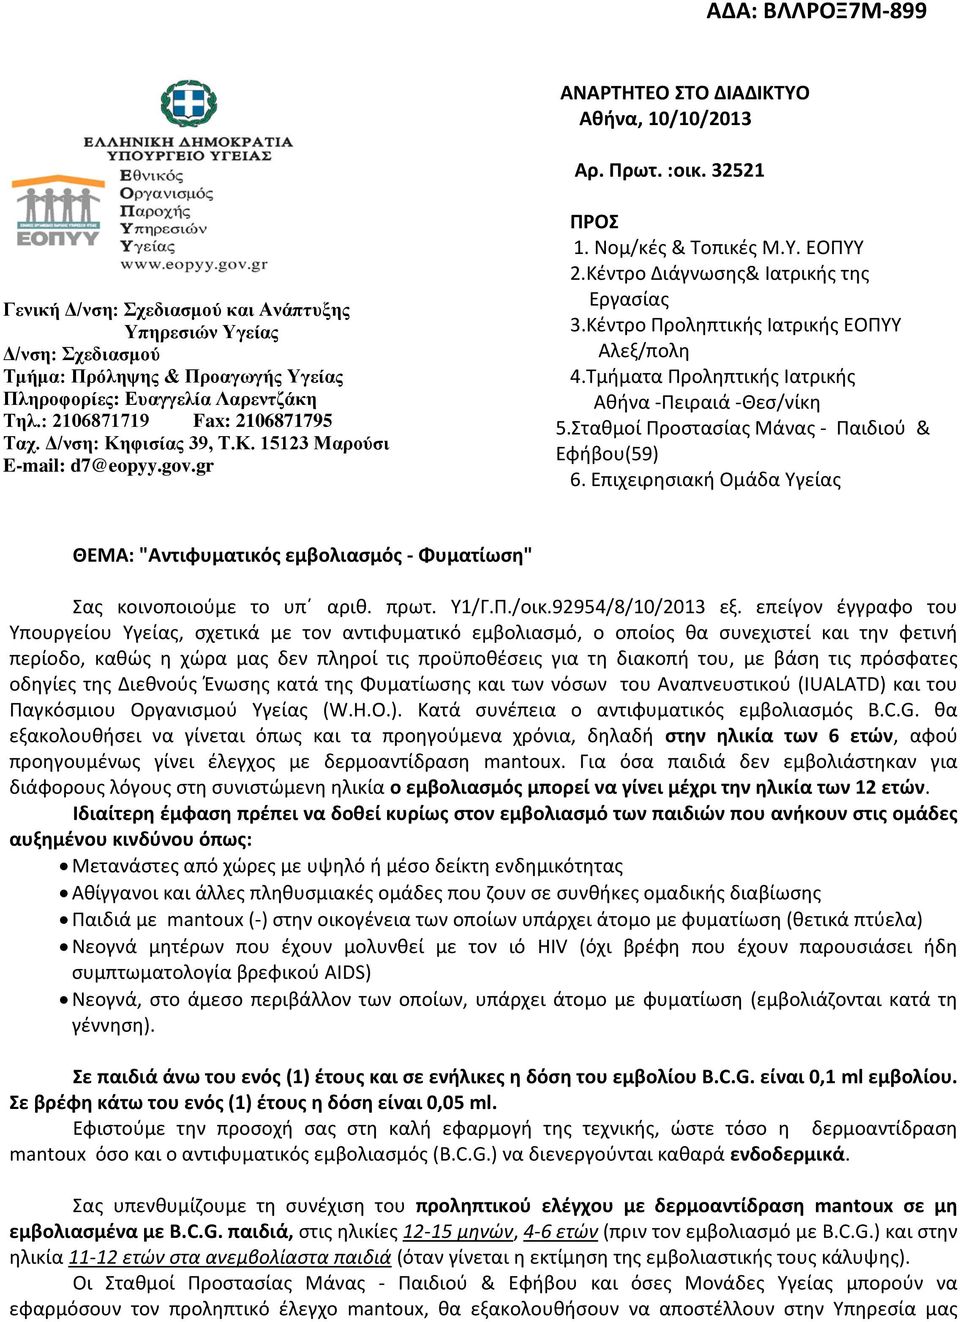 Δ/νση: Κηφισίας 39, Τ.Κ. 15123 Μαρούσι E-mail: d7@eopyy.gov.gr ΠΡΟΣ 1. Νομ/κές & Τοπικές Μ.Υ. ΕΟΠΥΥ 2.Κέντρο Διάγνωσης& Ιατρικής της Εργασίας 3.Κέντρο Προληπτικής Ιατρικής ΕΟΠΥΥ Αλεξ/πολη 4.